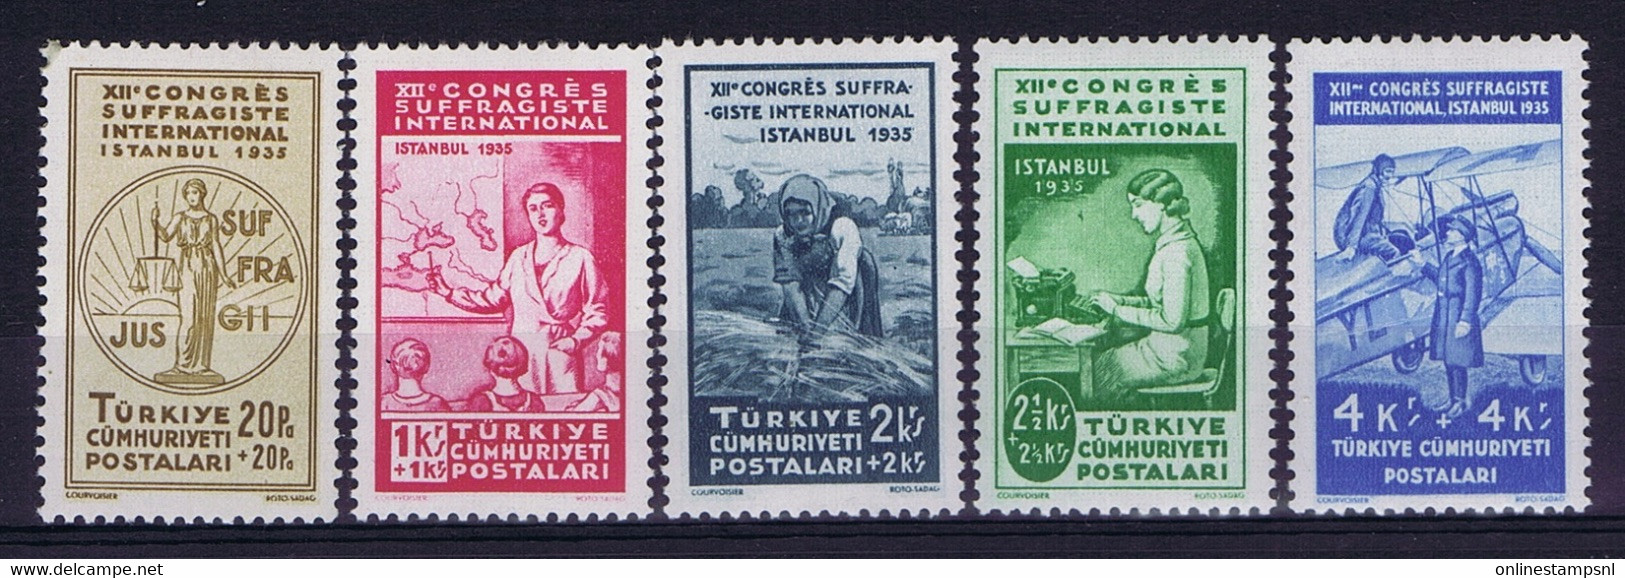 Turkey Mi 985 - 999  Isf 1324 -1338 1935 Mint Never Hinged, New Without Hinge. Postfrisch Women's Congress - Ungebraucht